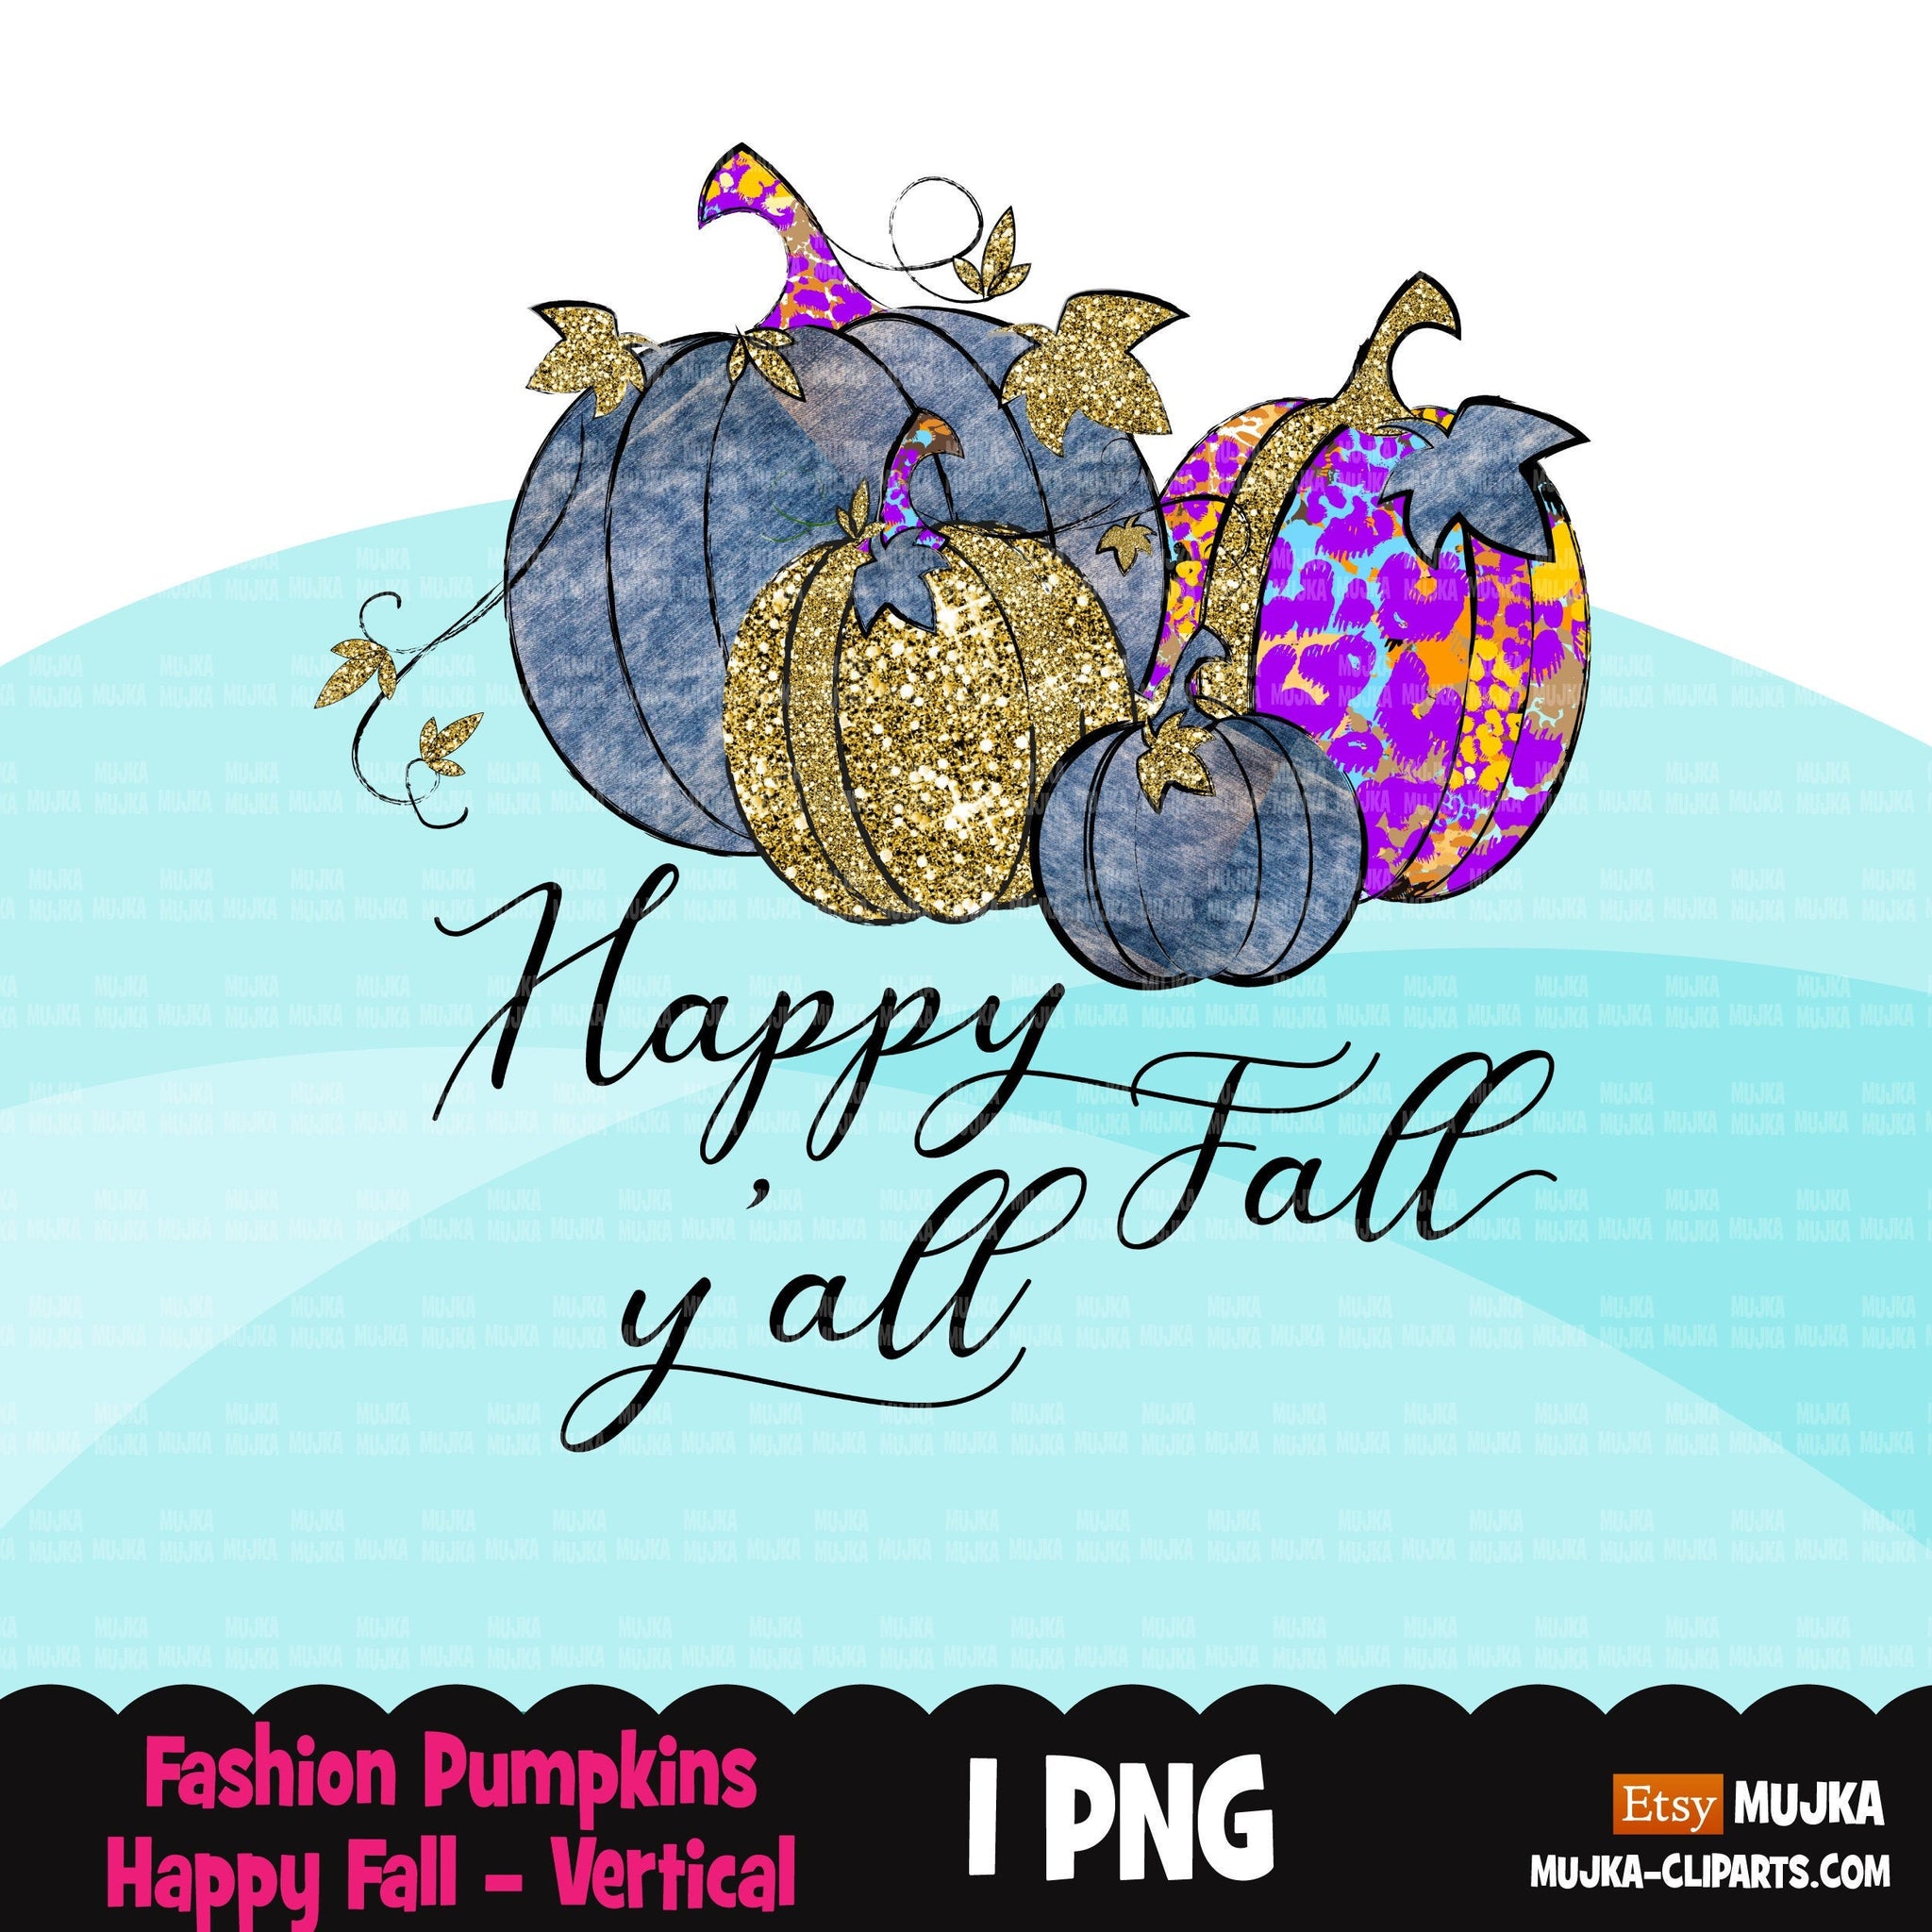 Happy Fall y'all png, denim pumpkins sublimation designs digital download, fall pumpkins, fall shirt designs, gold glitter pumpkin graphics